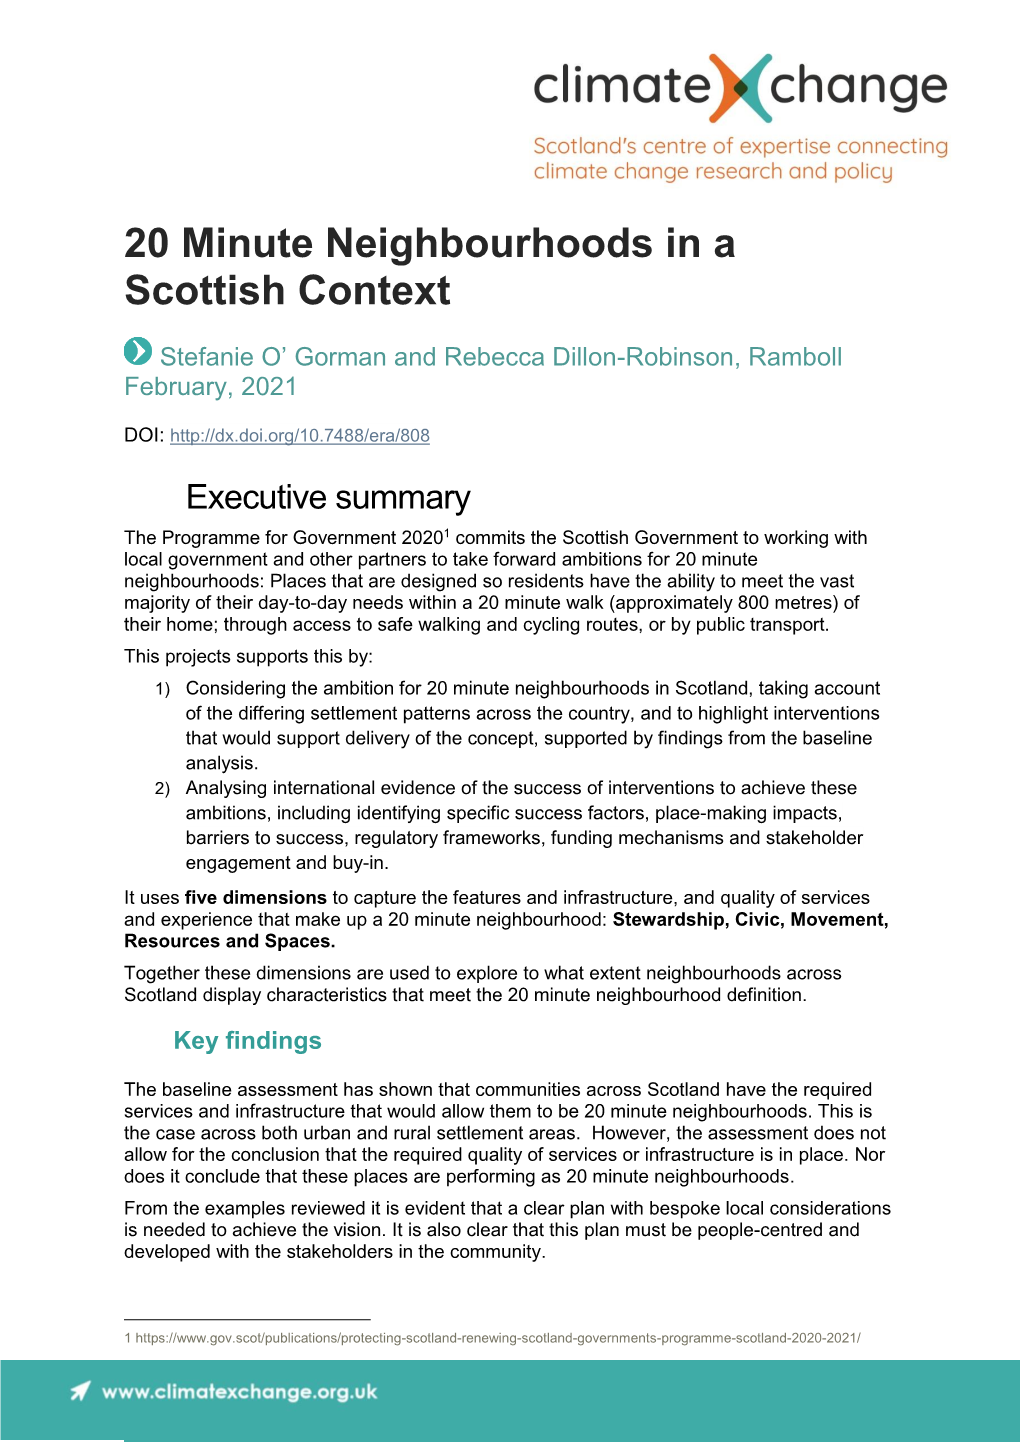 20 Minute Neighbourhoods in a Scottish Context